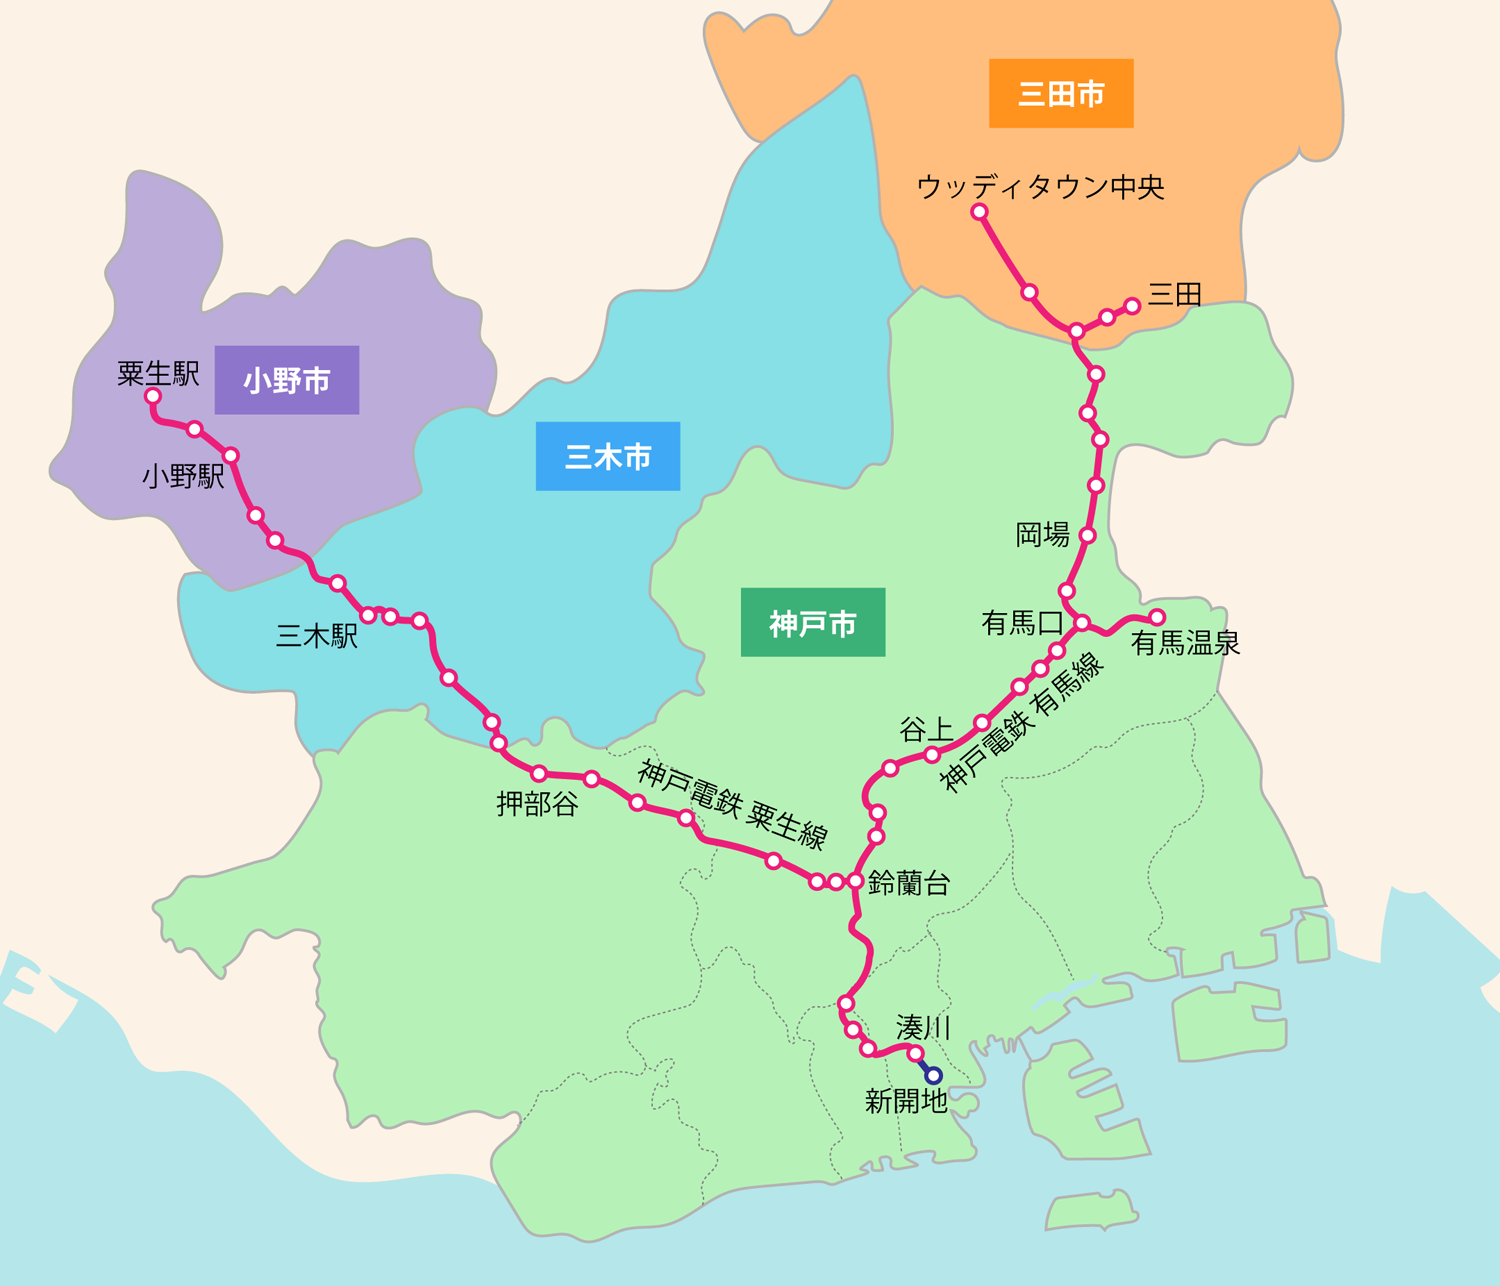 事業エリア 神戸電鉄沿線：神戸市北区・三田市・三木市・小野市